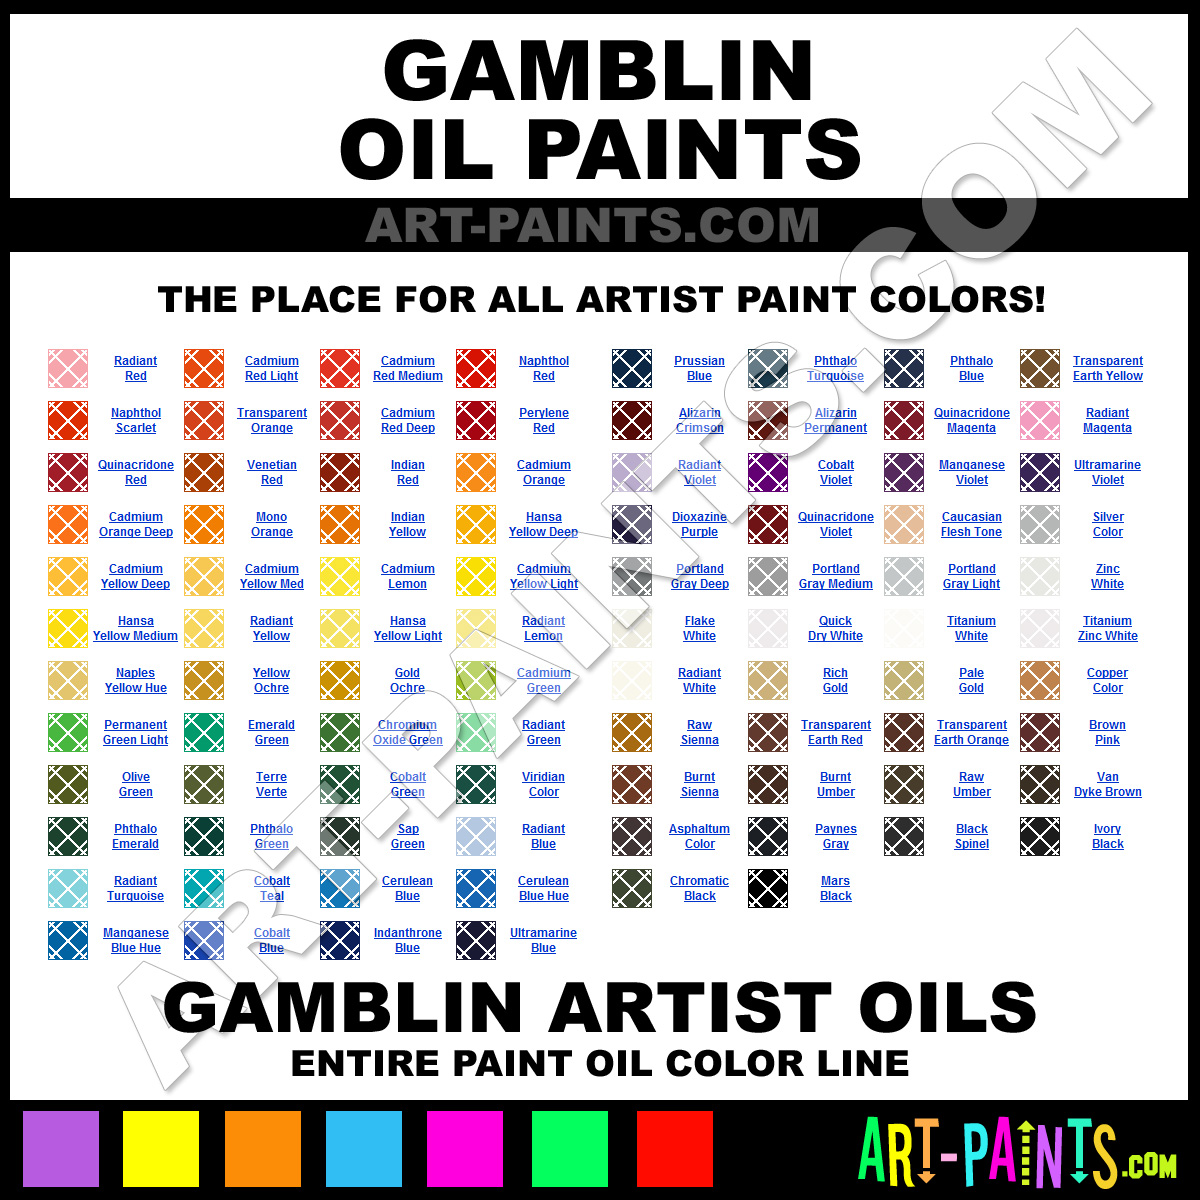 Gamblin Oil Paint Brands Gamblin Paint Brands, Oil Paint, Artists Oil Paints, Accent On